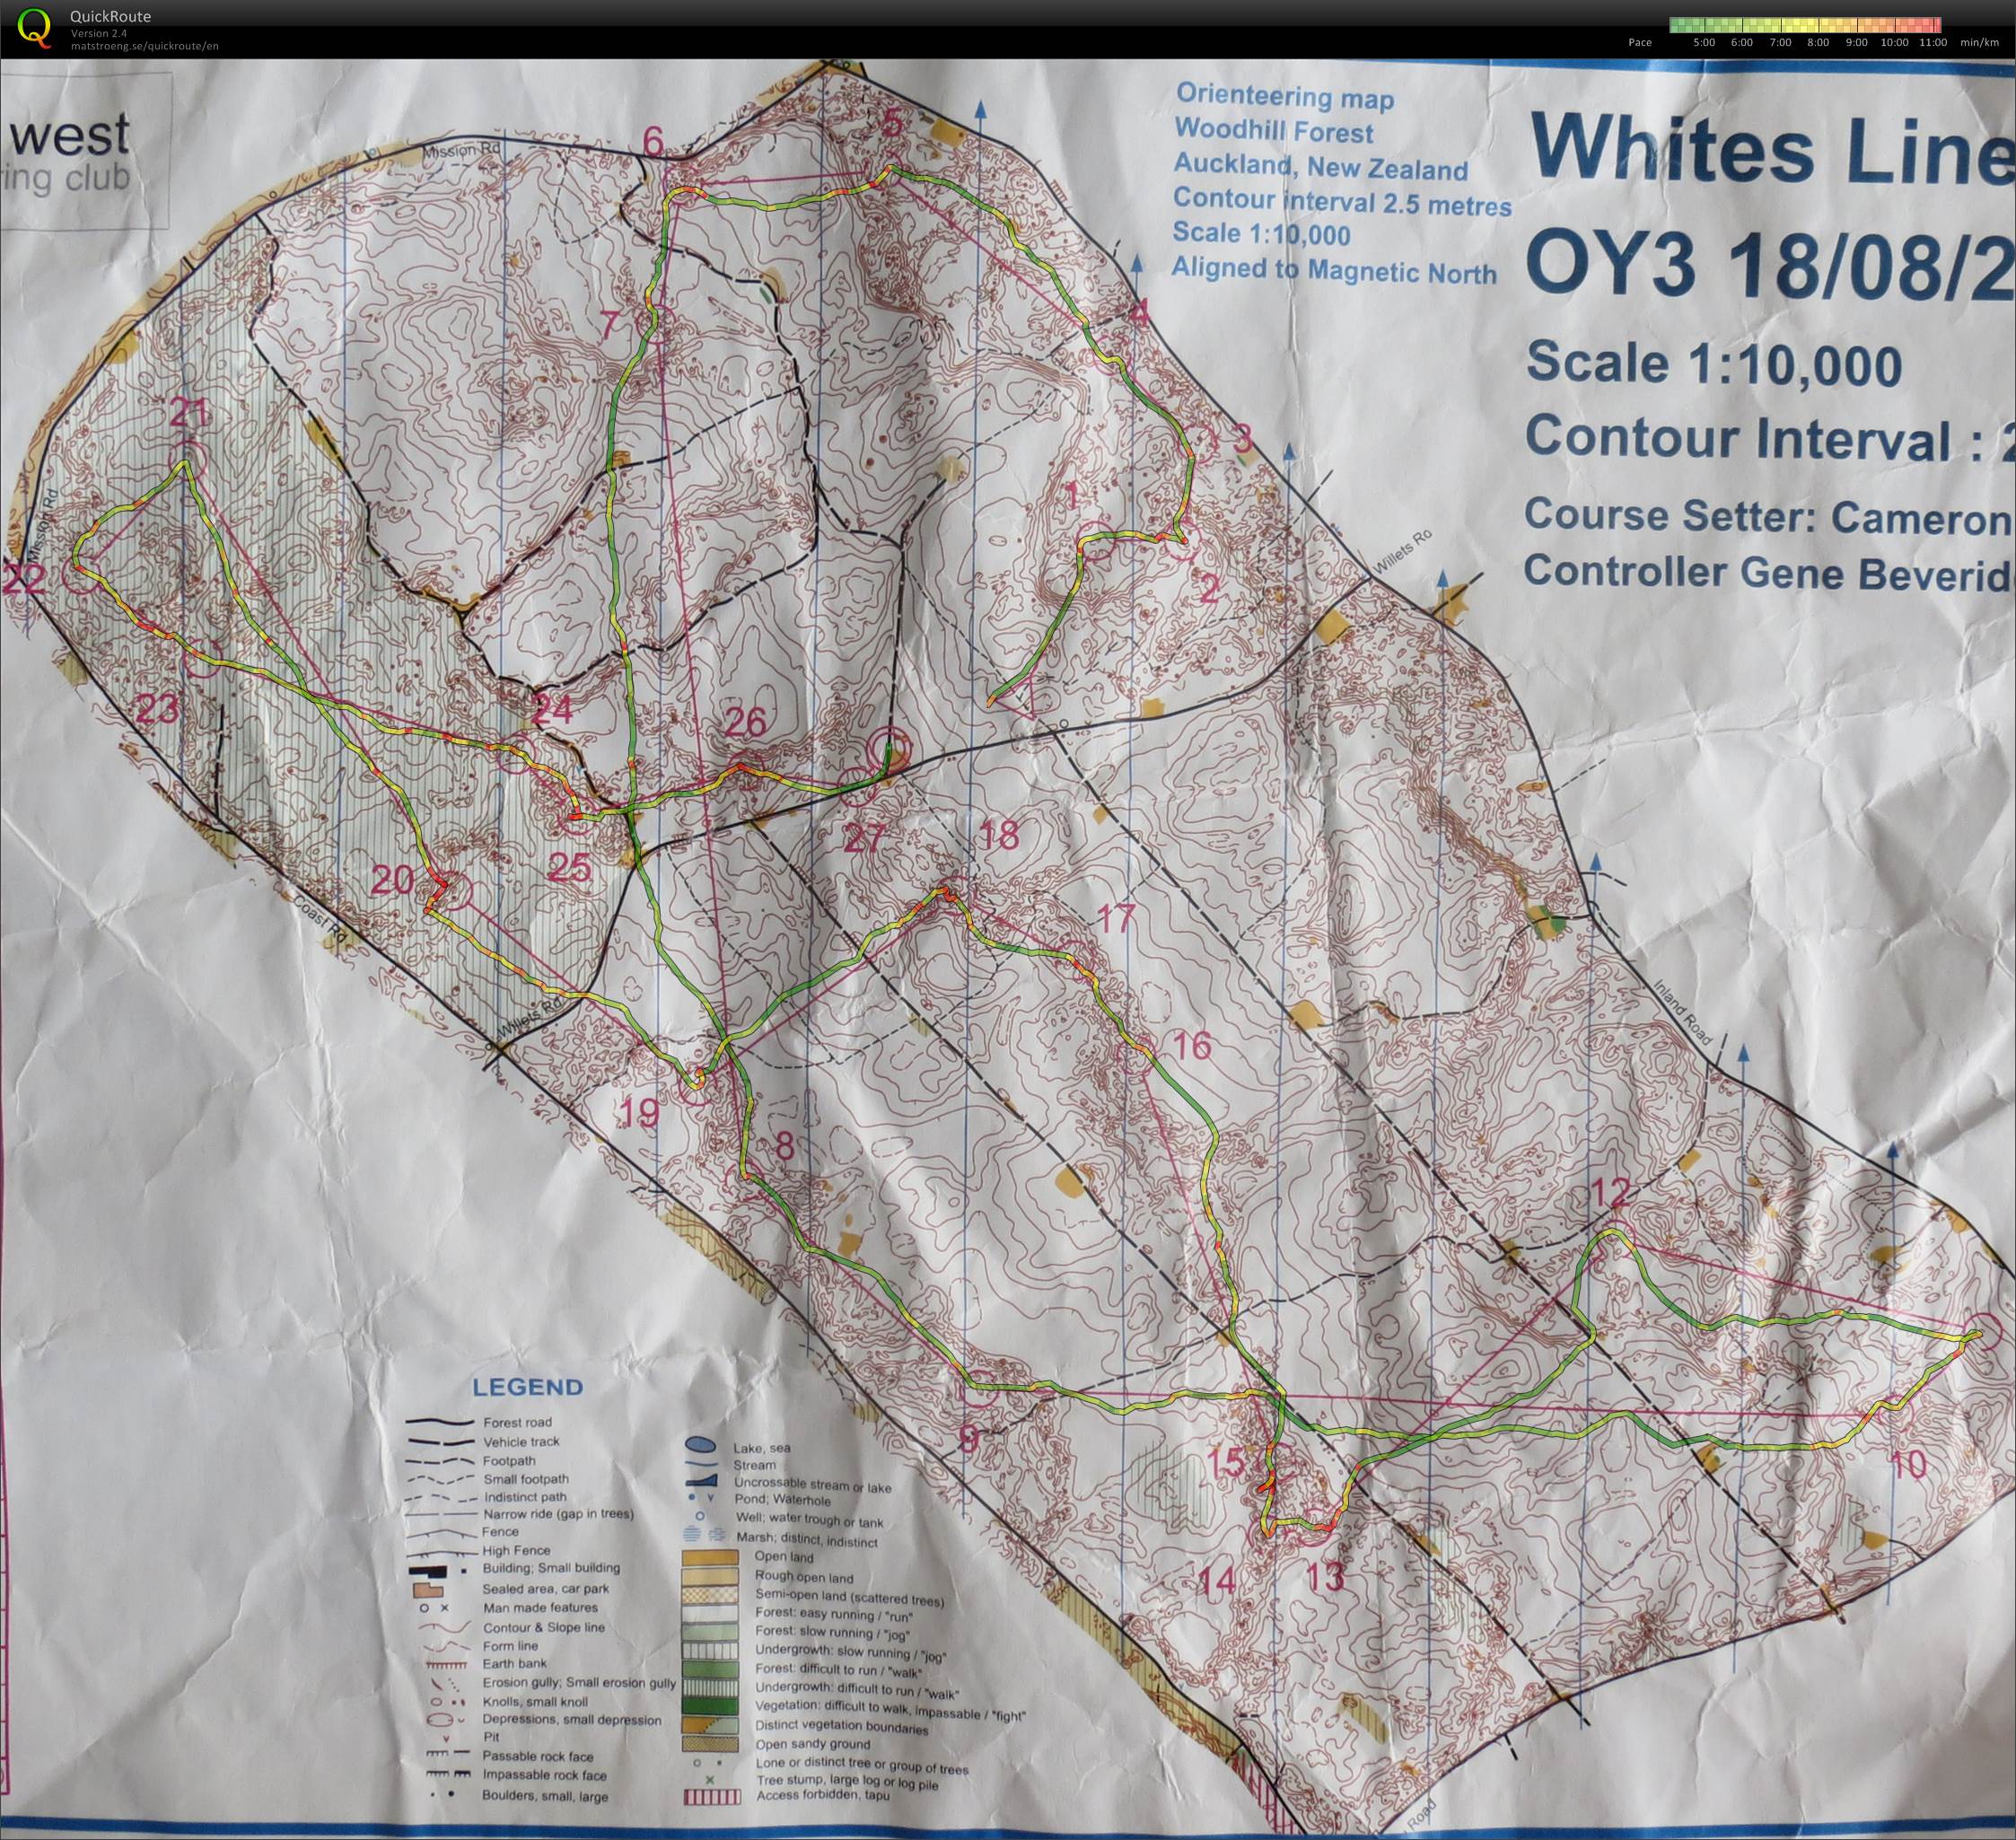 OY3 2013 Whites Line (17.08.2013)